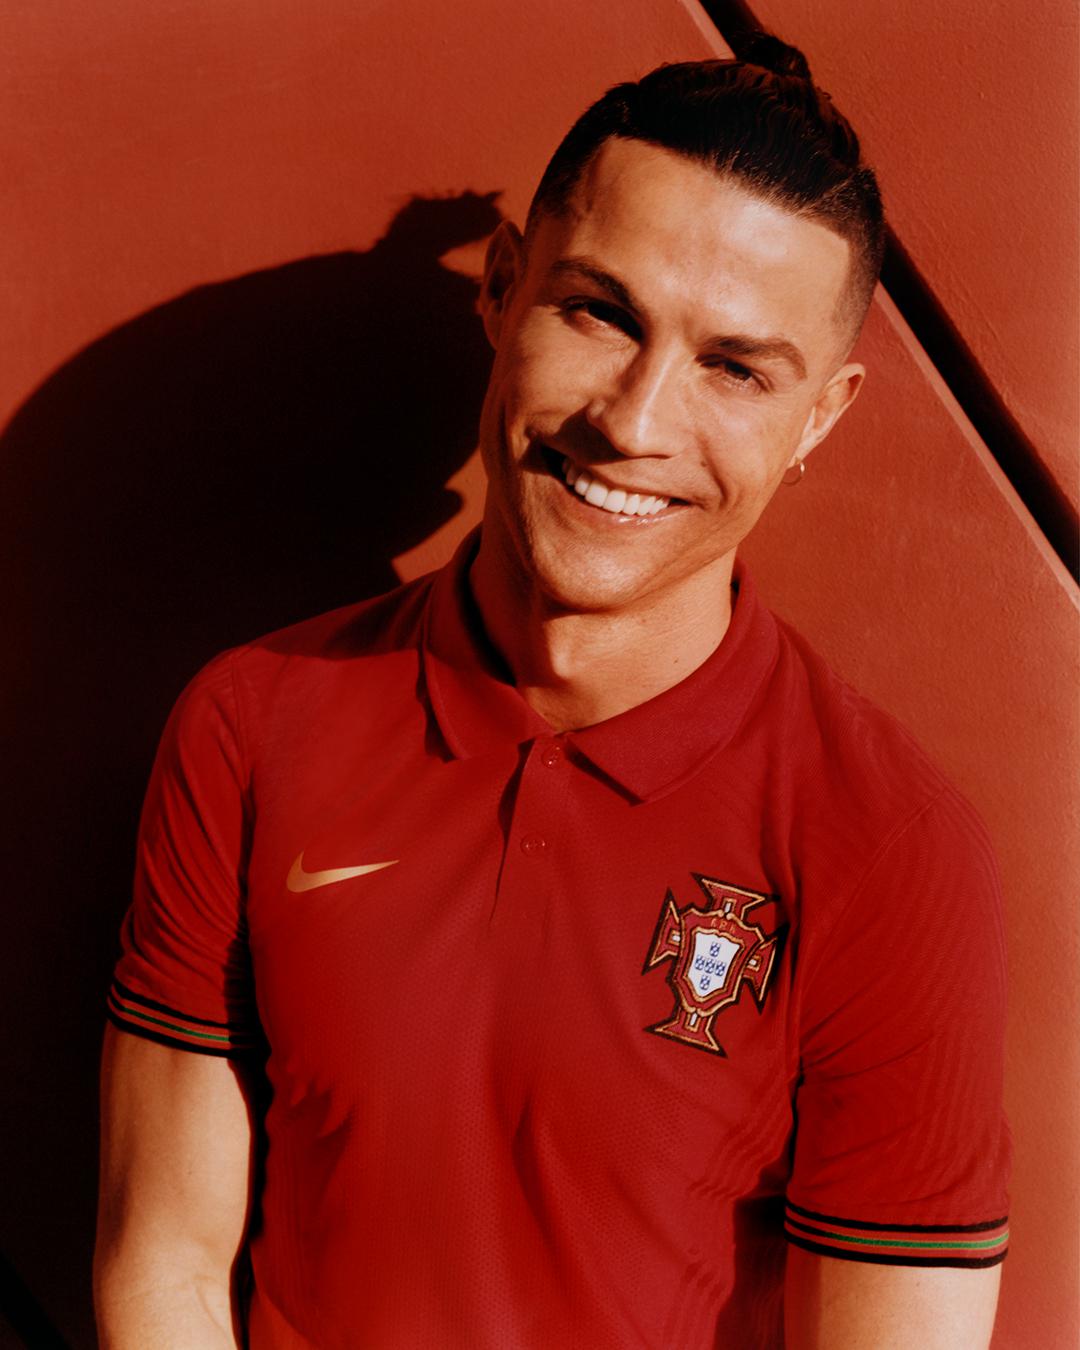 葡萄牙国家队公布新款球衣, C罗帅气出镜拍摄定妆照